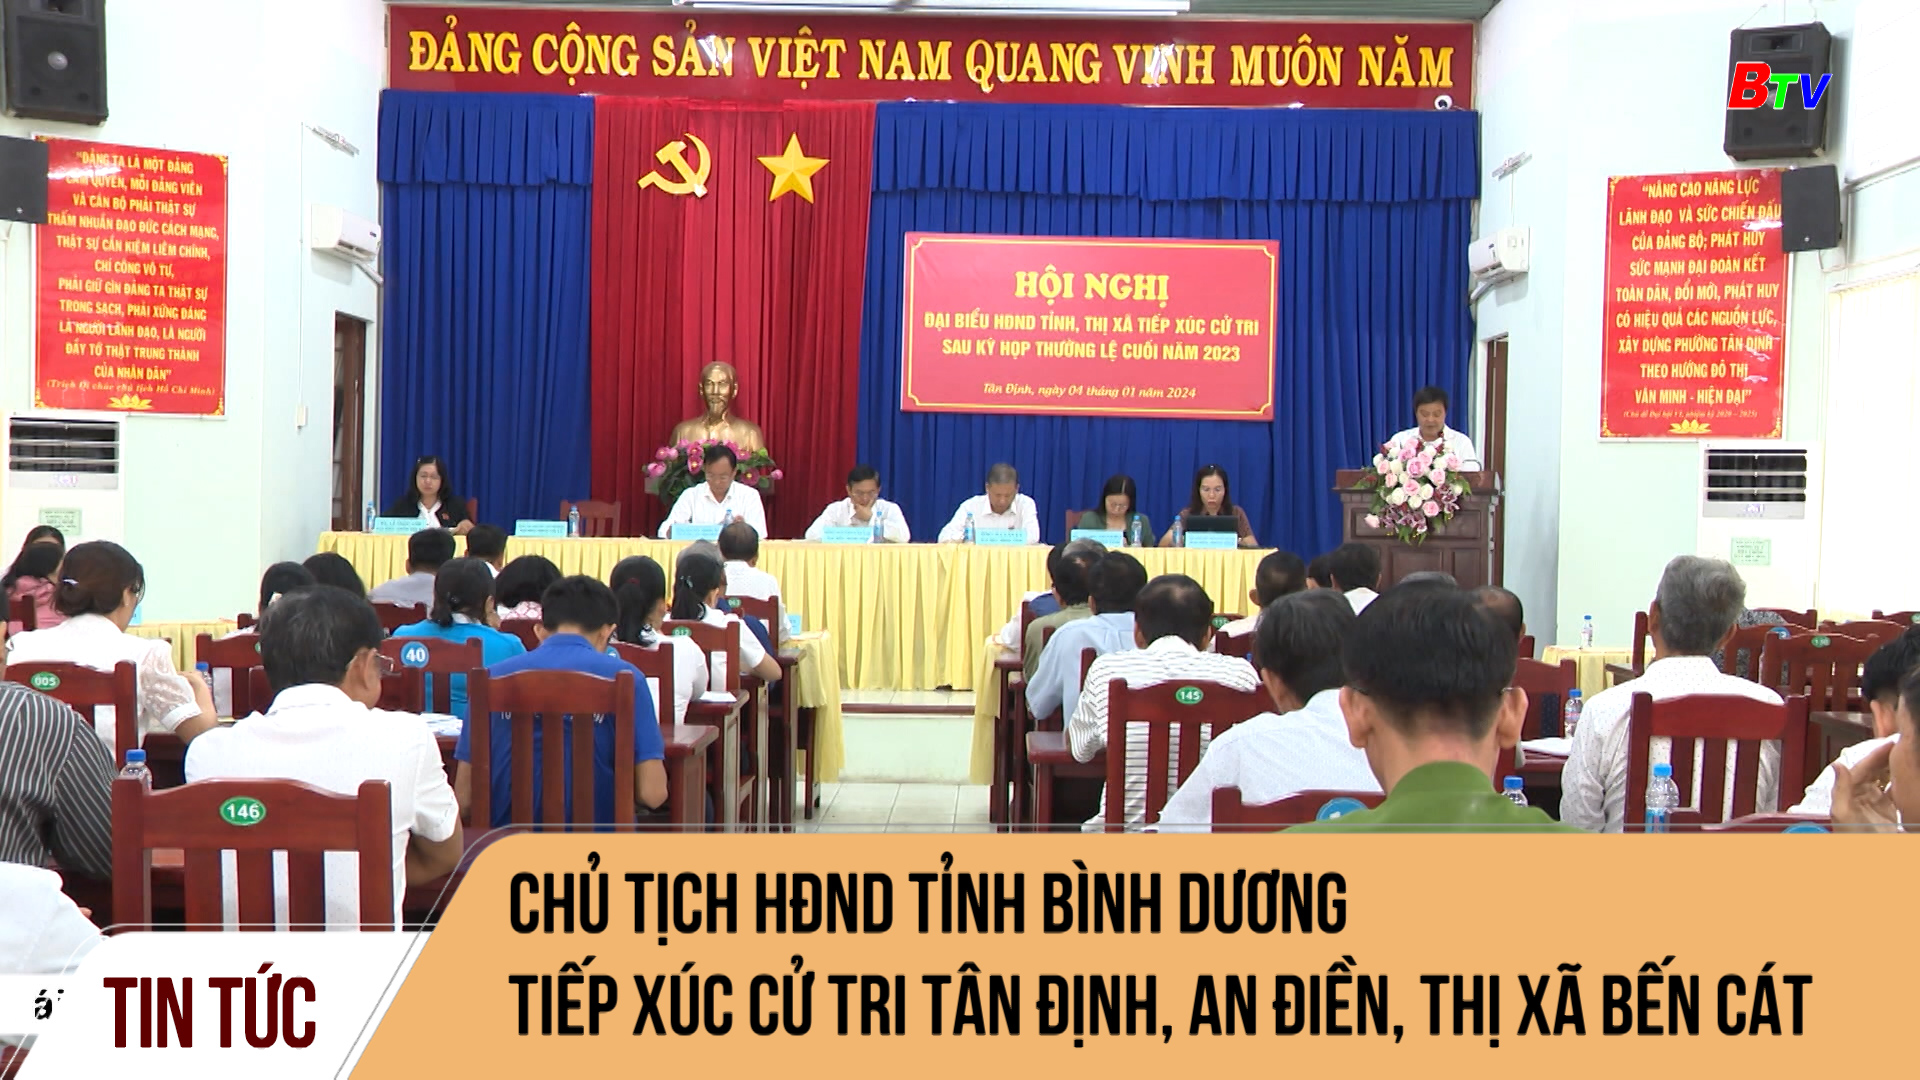 Chủ tịch HĐND tỉnh Bình Dương tiếp xúc cử tri Tân Định, An Điền, thị xã Bến Cát